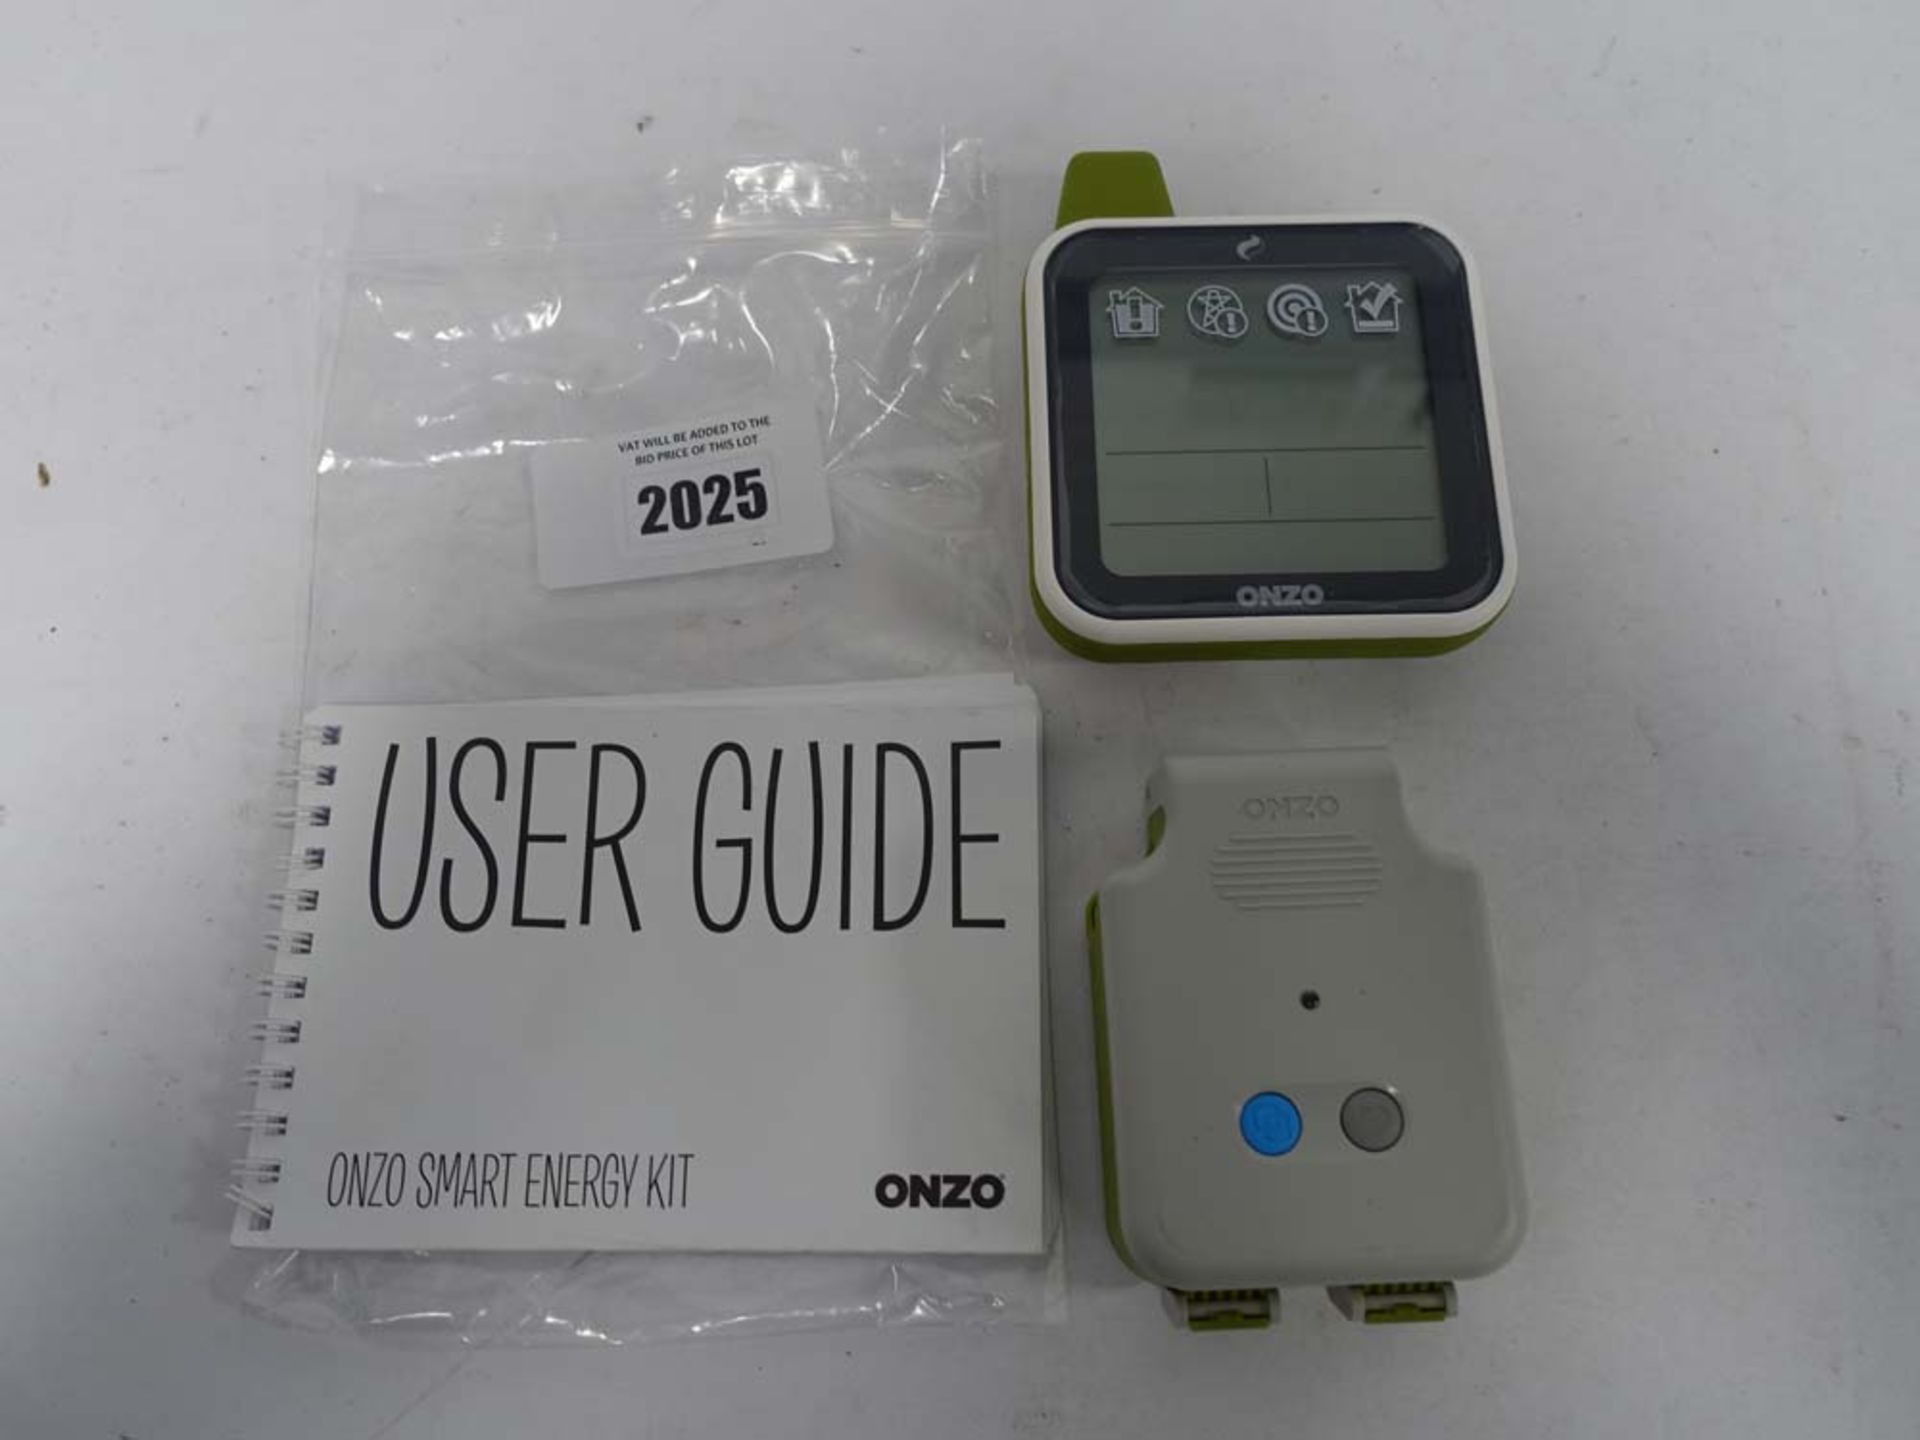 Onzo smart energy kit